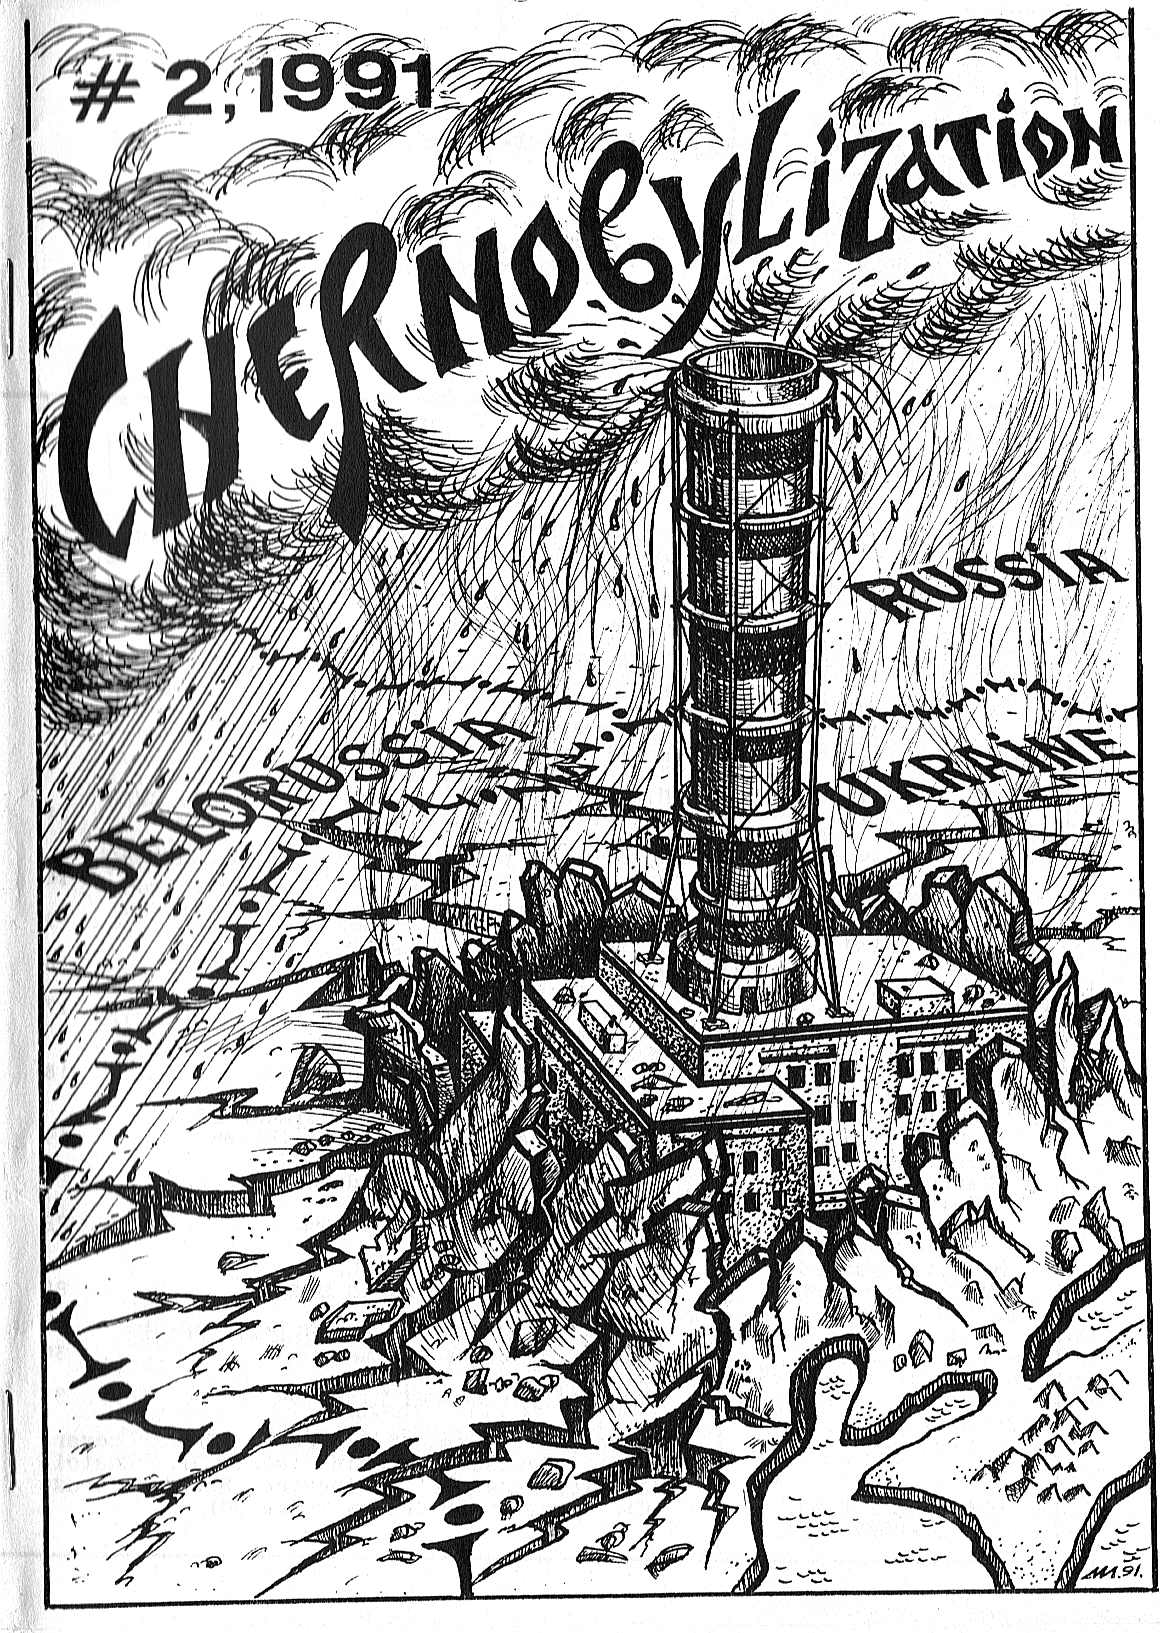 RG Cameron March 21 illo #2 Chernobylization #2